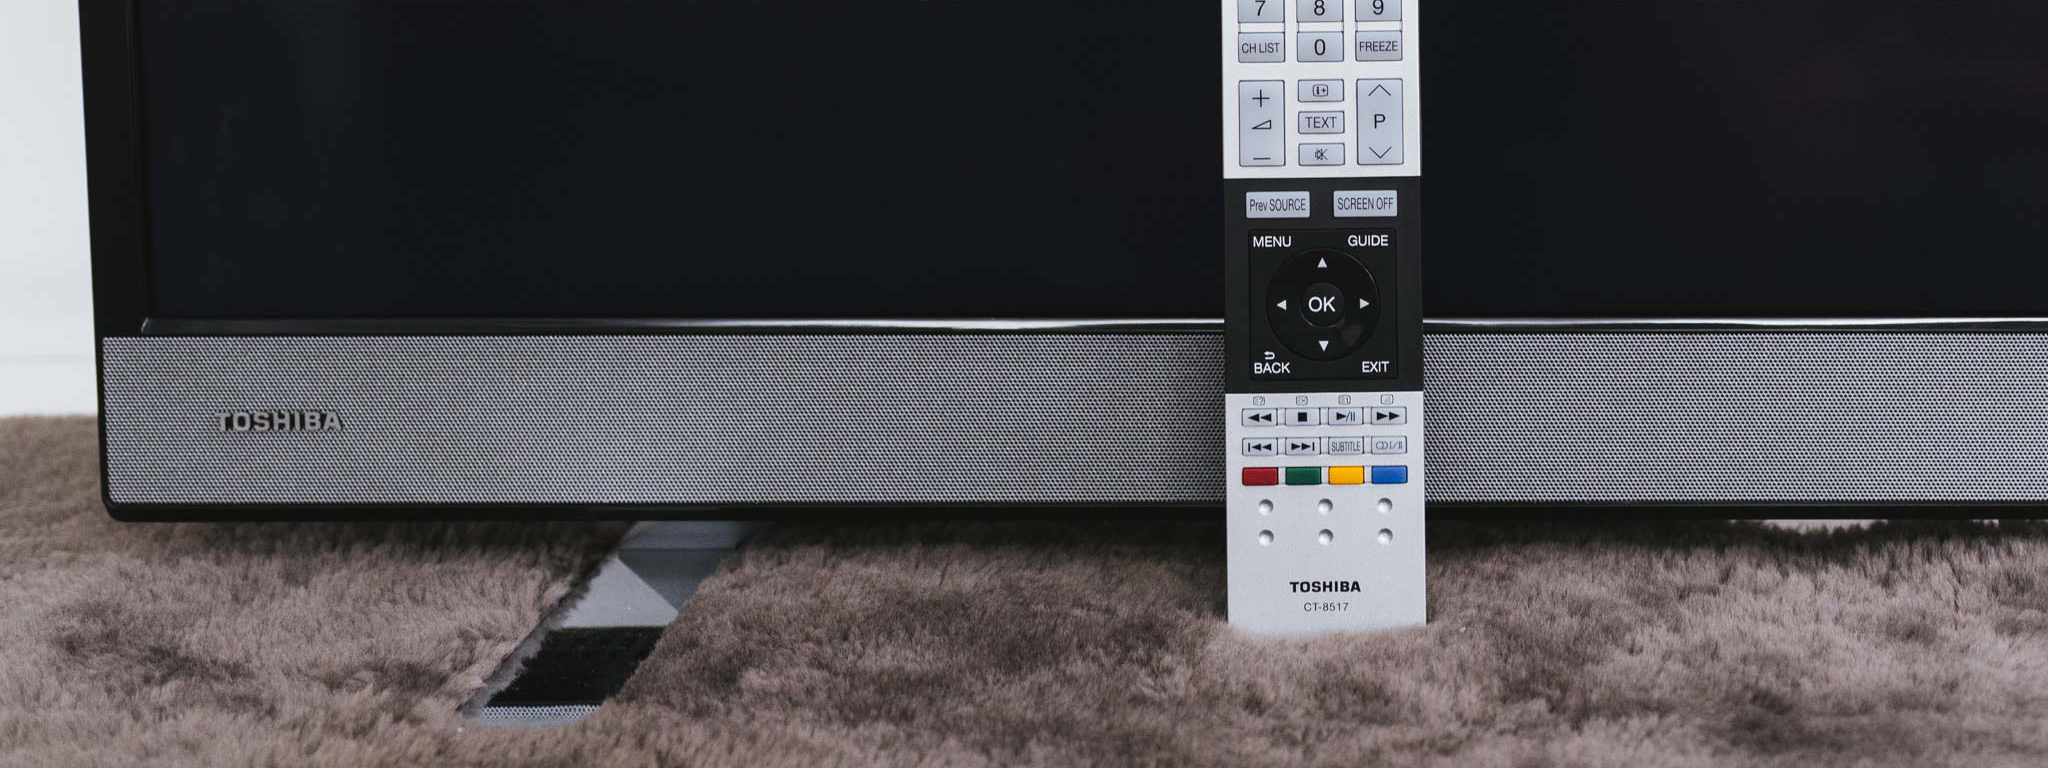 Toshiba nhượng lại mảng sản xuất TV cho Hisense